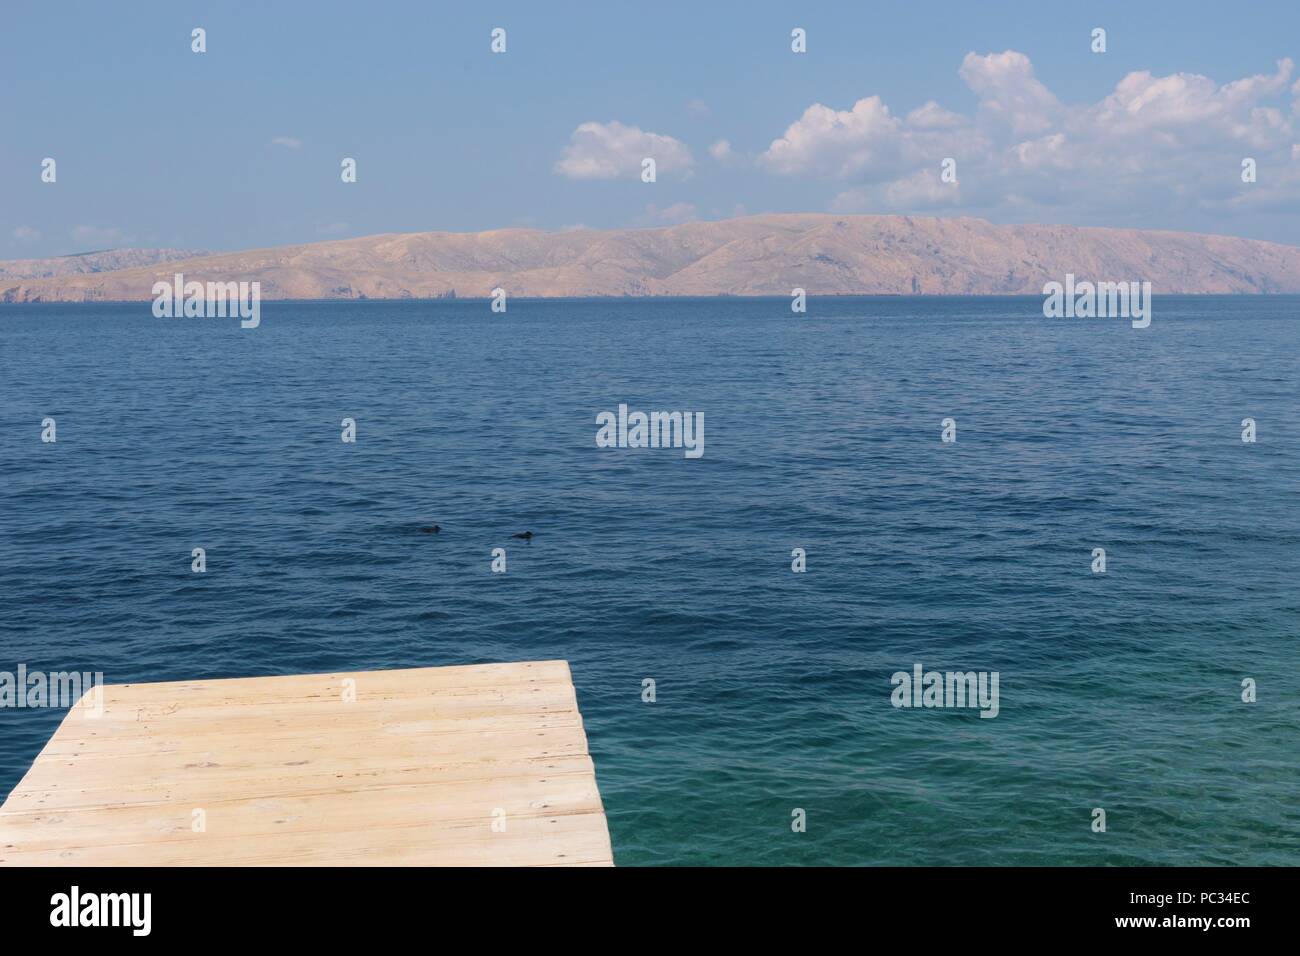 Trampolino di lancio nel mare Adriatico. Sulla costa di Senj, Croazia, Europa del sud. Foto Stock